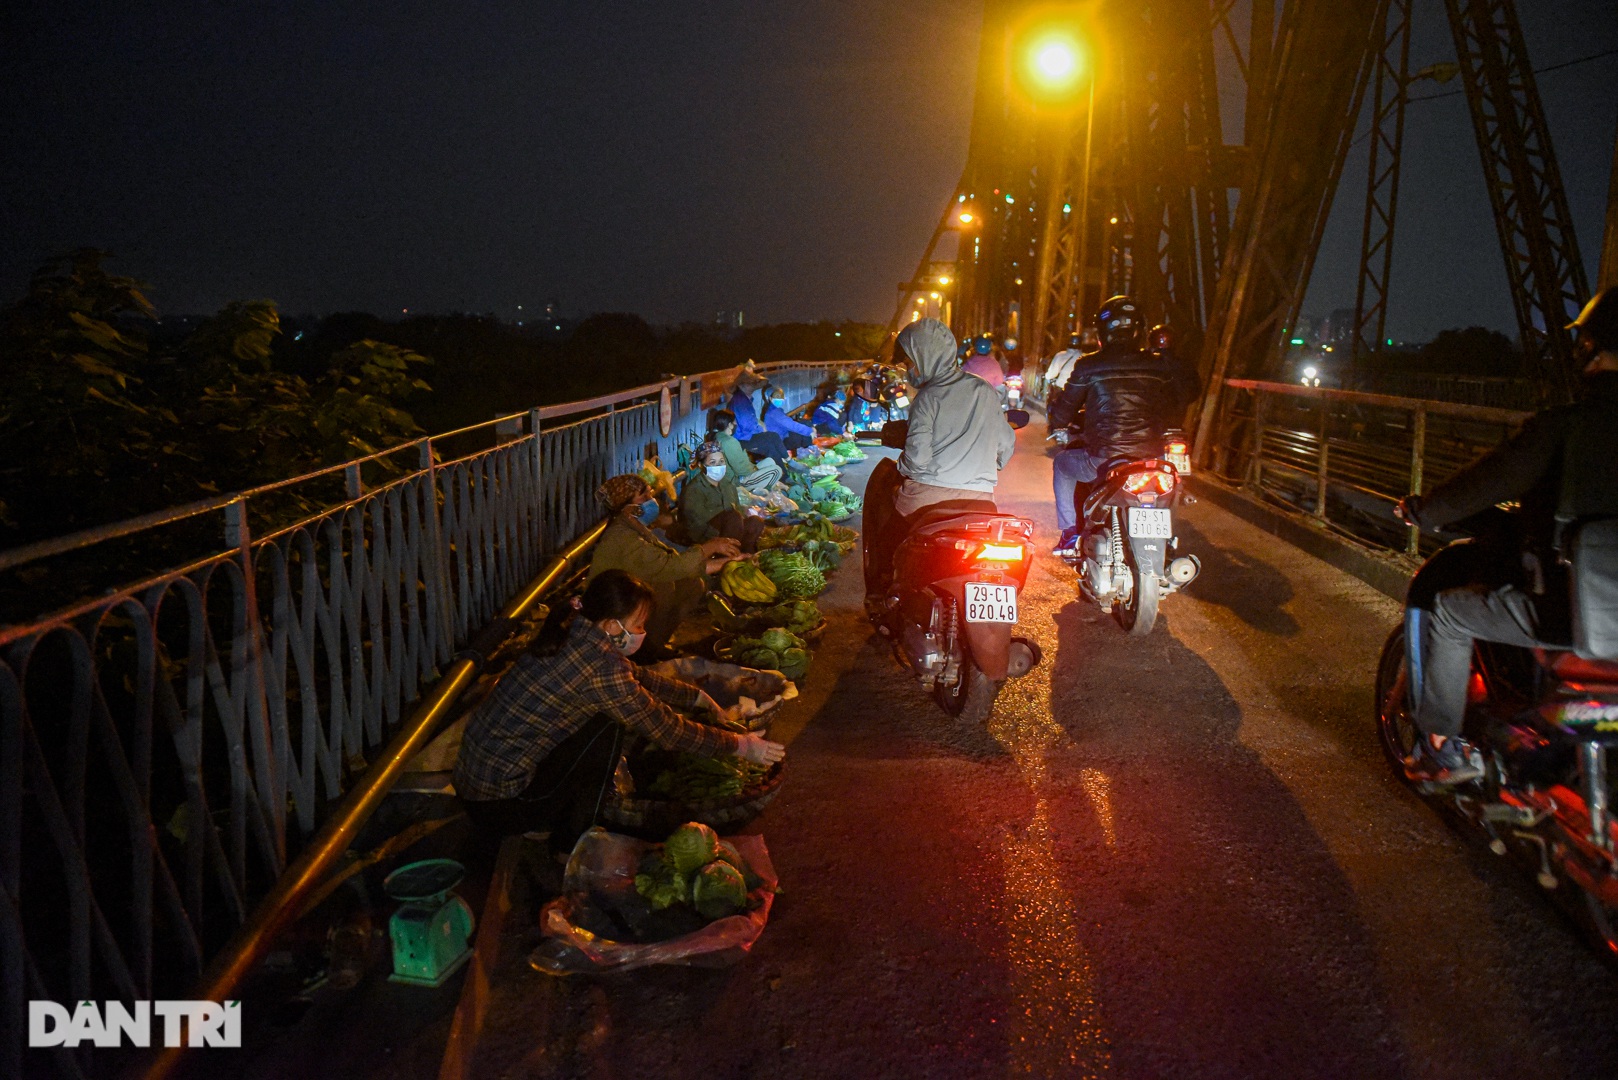 Cảnh họp chợ lộn xộn, giao thông ùn ứ trên cây cầu trăm tuổi ở Hà Nội - 7